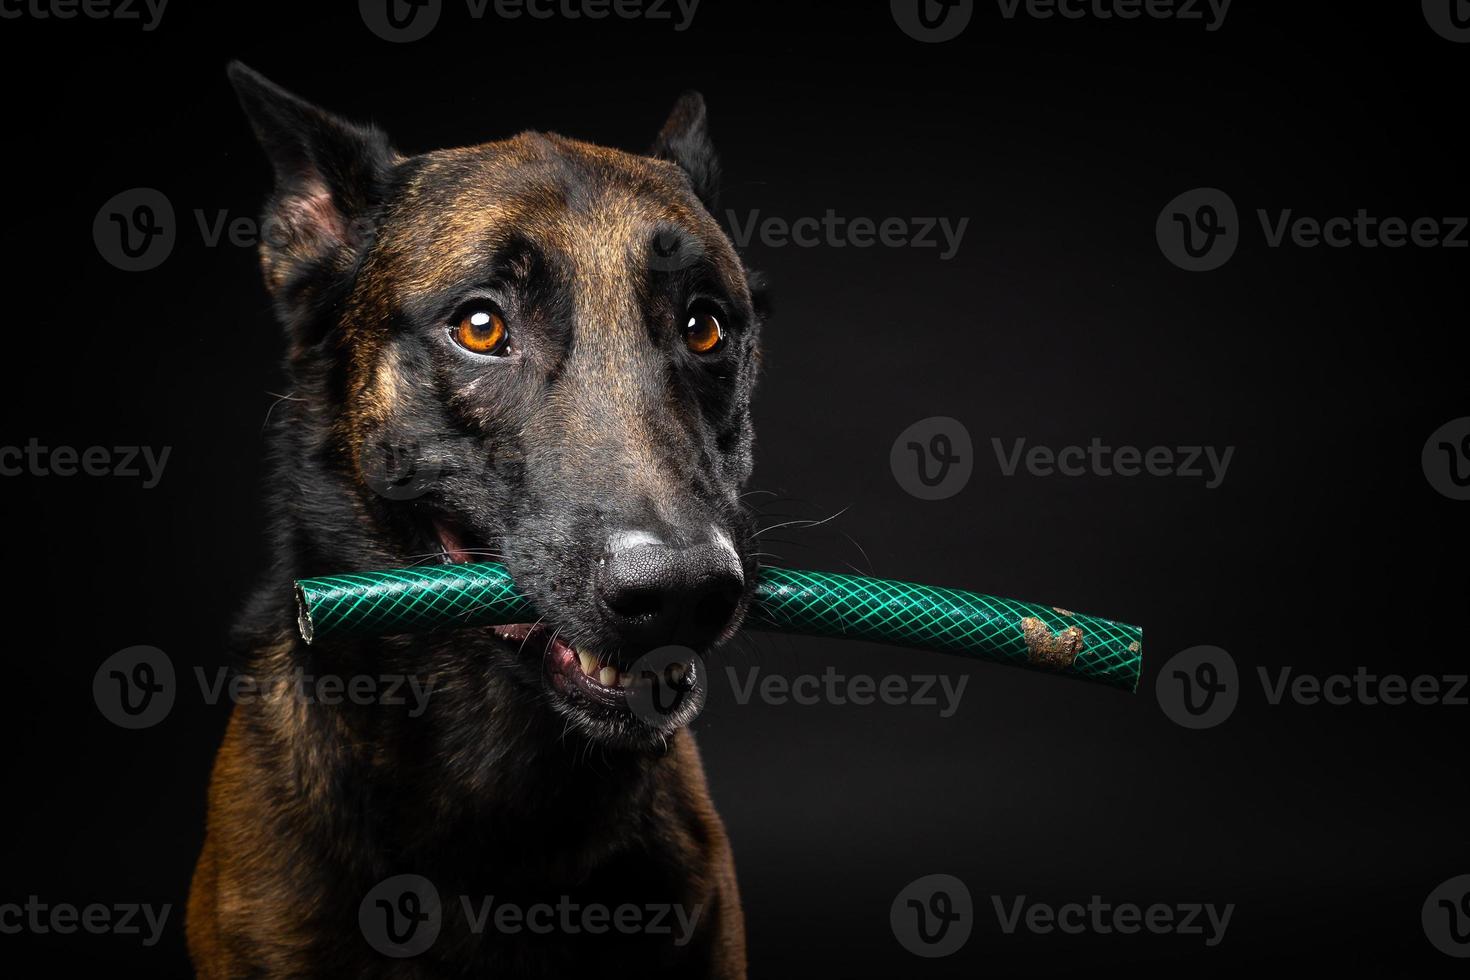 retrato de um cão pastor belga com um brinquedo na boca, um tiro em um fundo preto isolado. foto